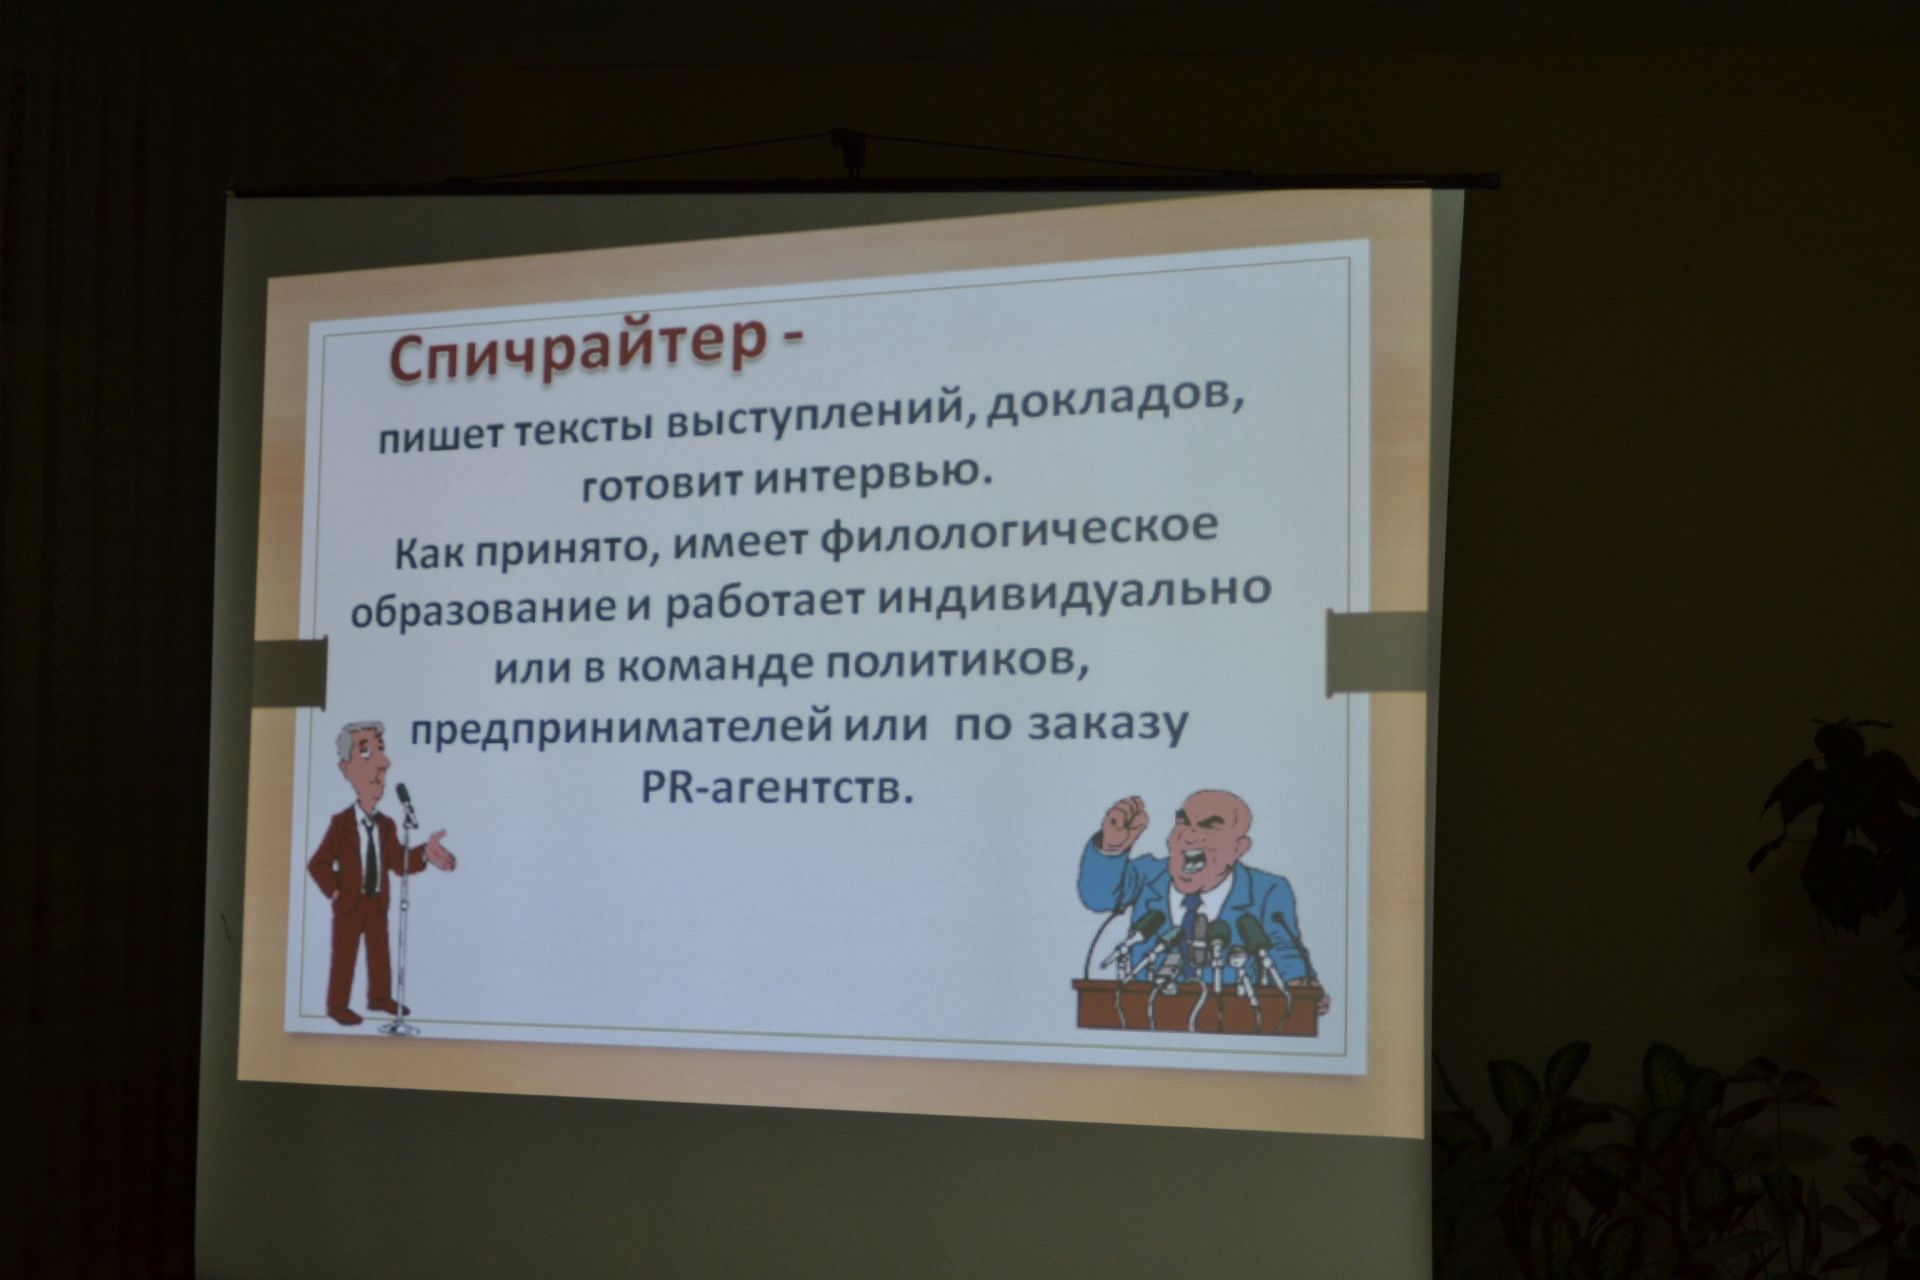 В селе Князево провели час профориентации, посвященный Году рабочих профессий